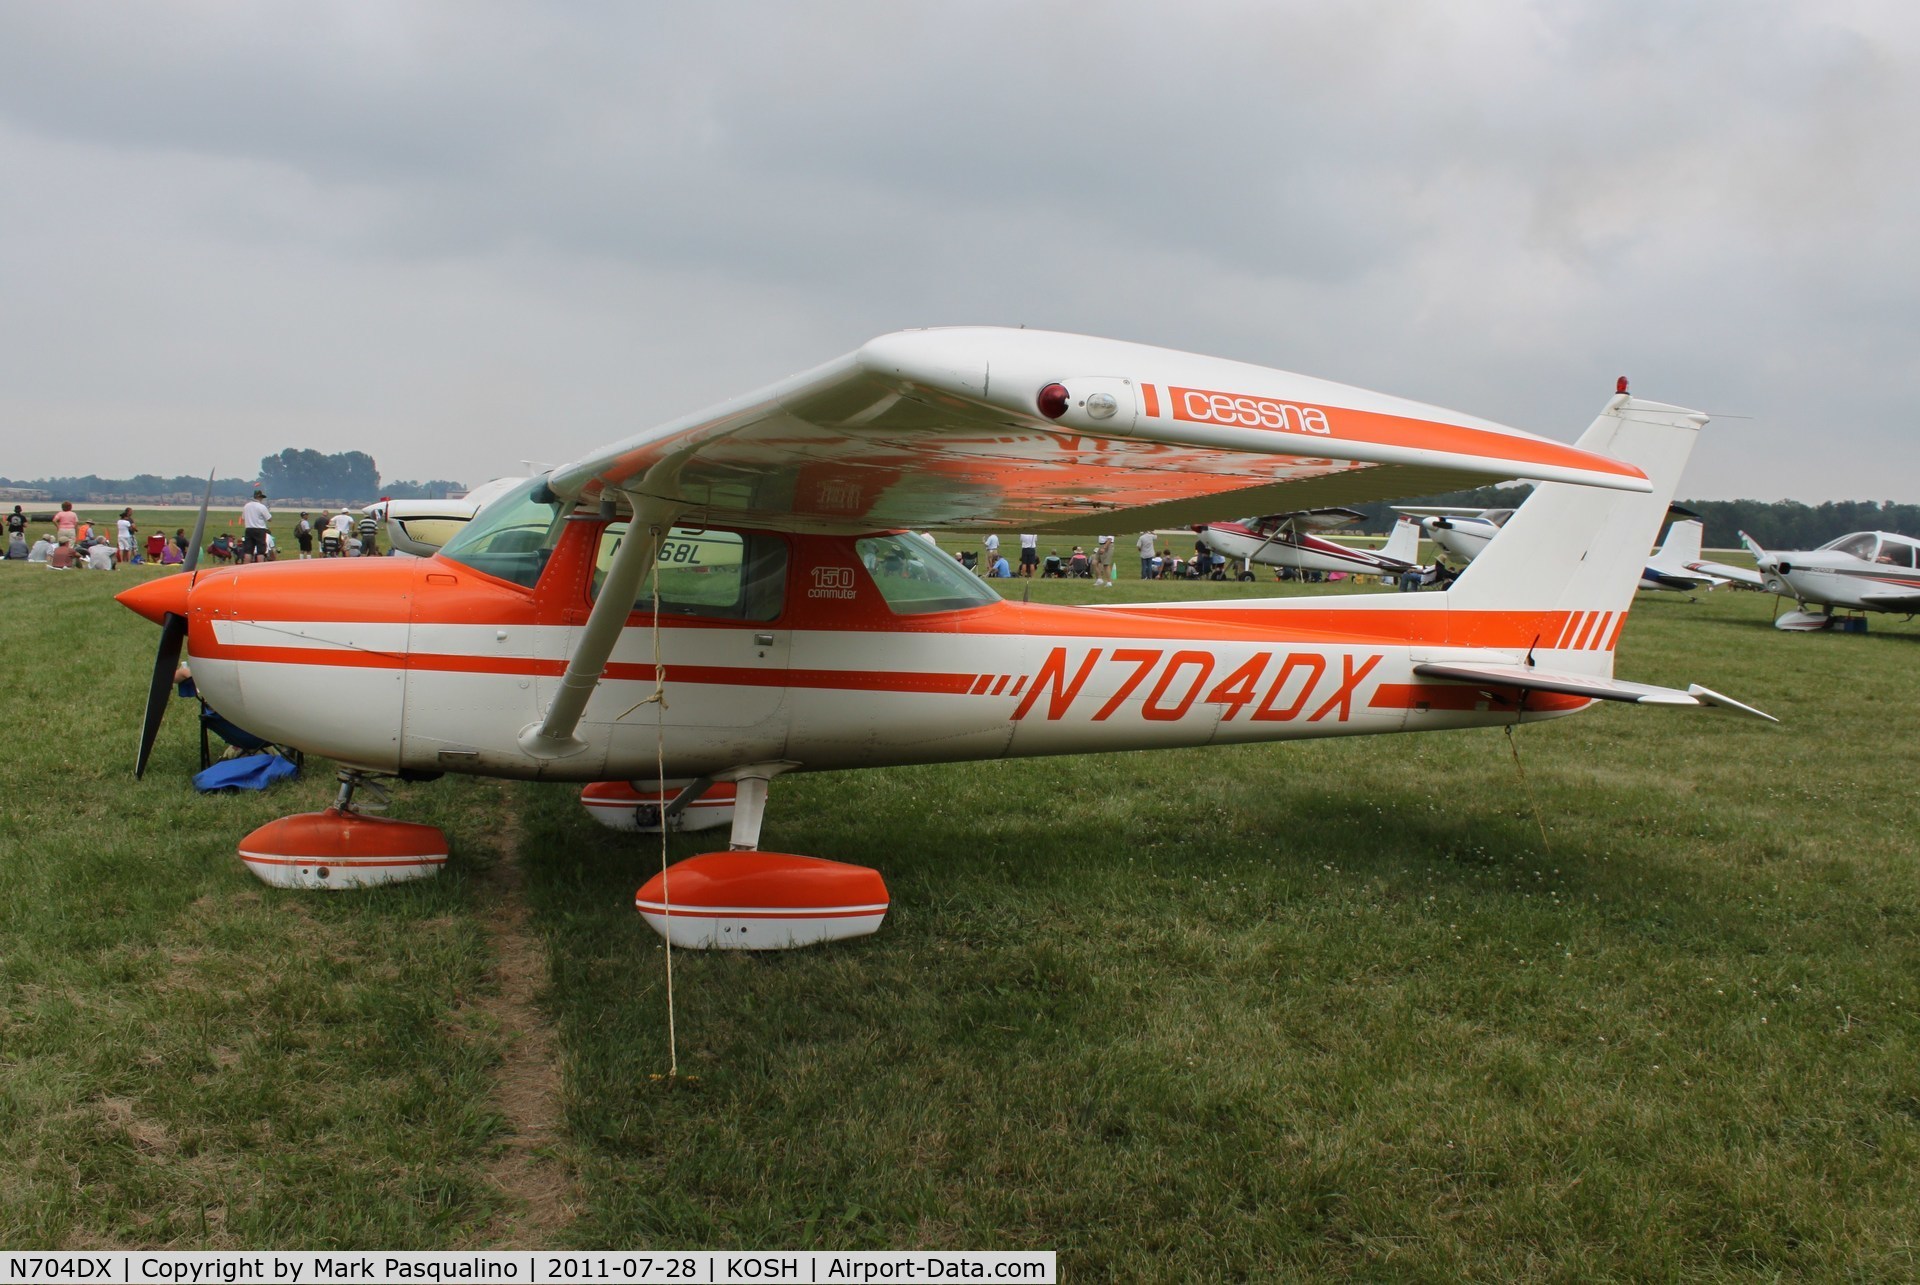 N704DX, 1976 Cessna 150M C/N 15078539, Cessna 150M